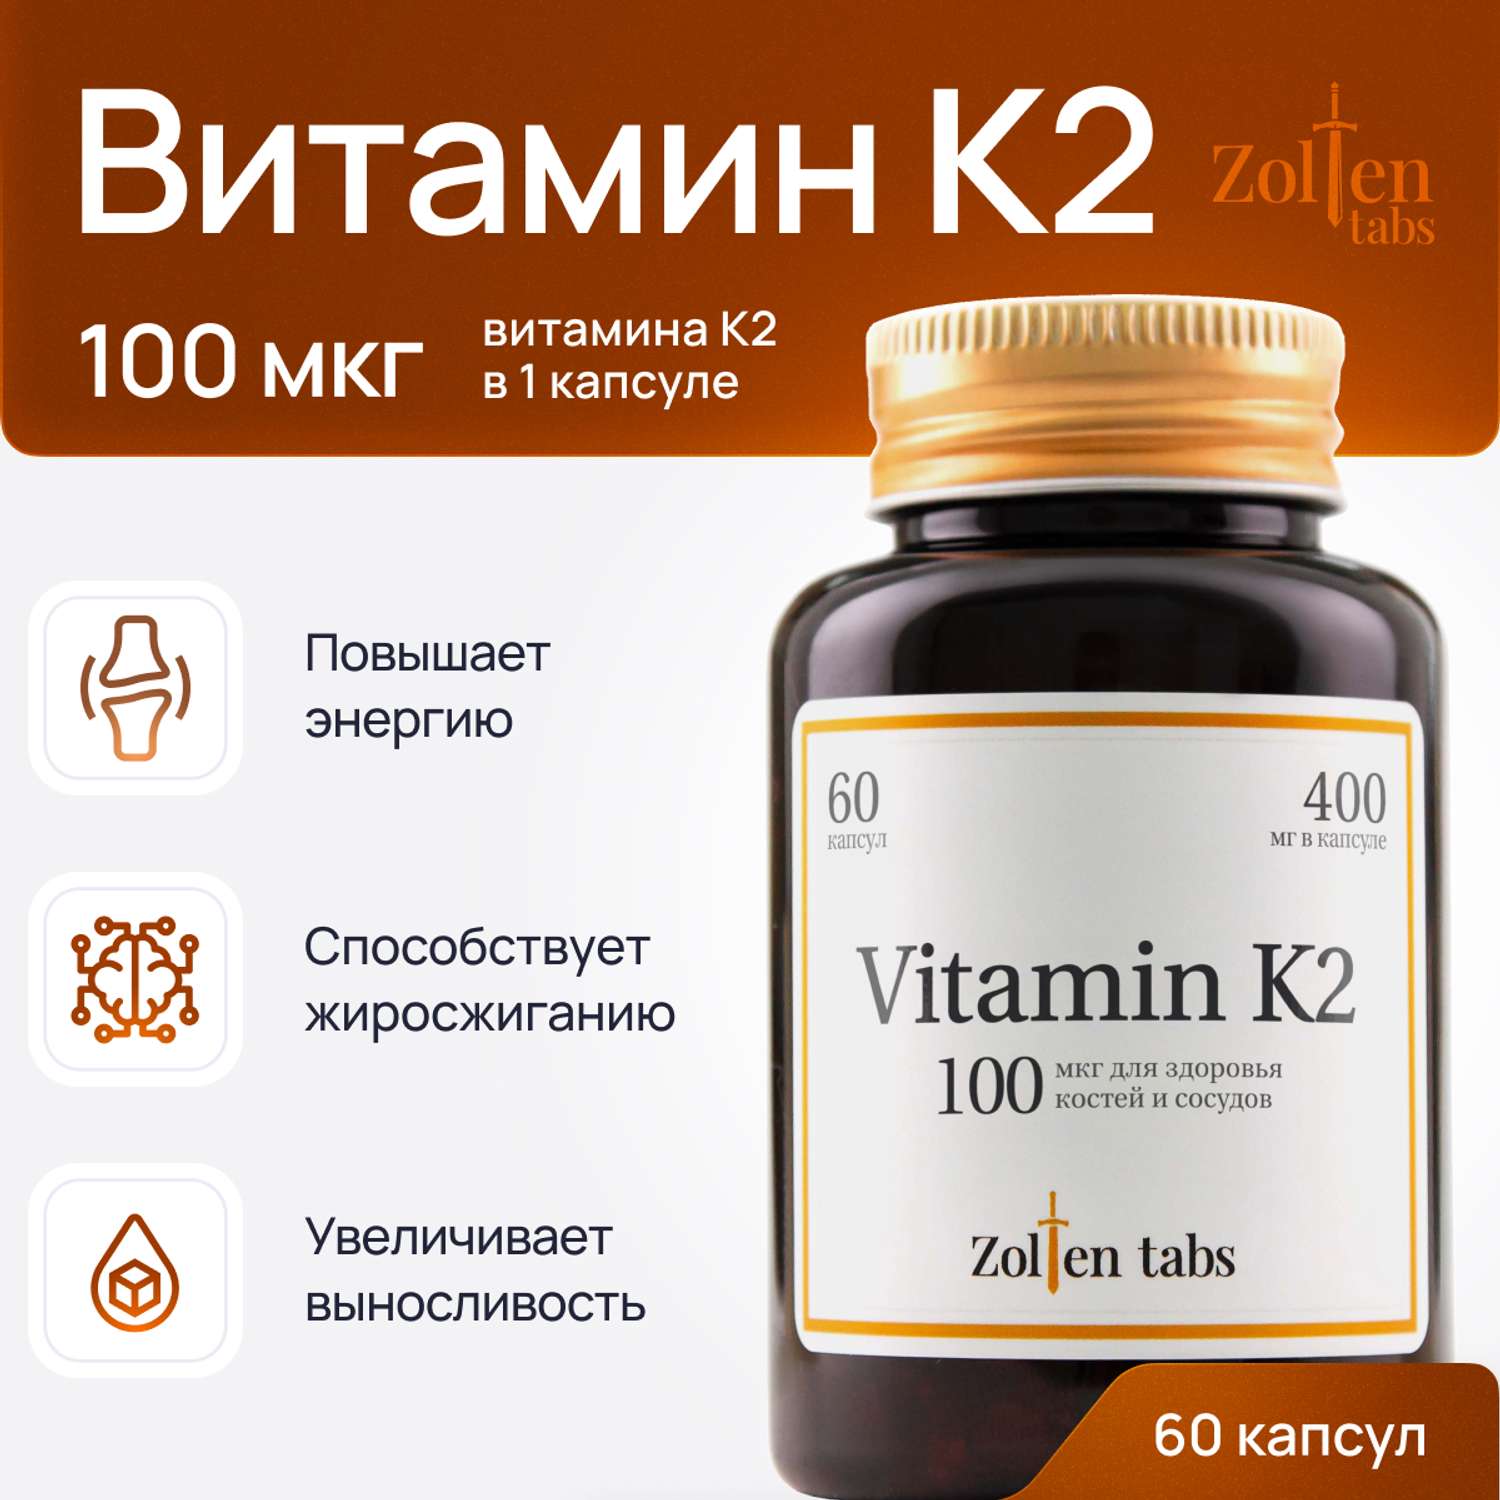 Витамин К2 Zolten Tabs витамины БАДы для здоровья костей и сосудов менахинон-7 60 капсул - фото 1